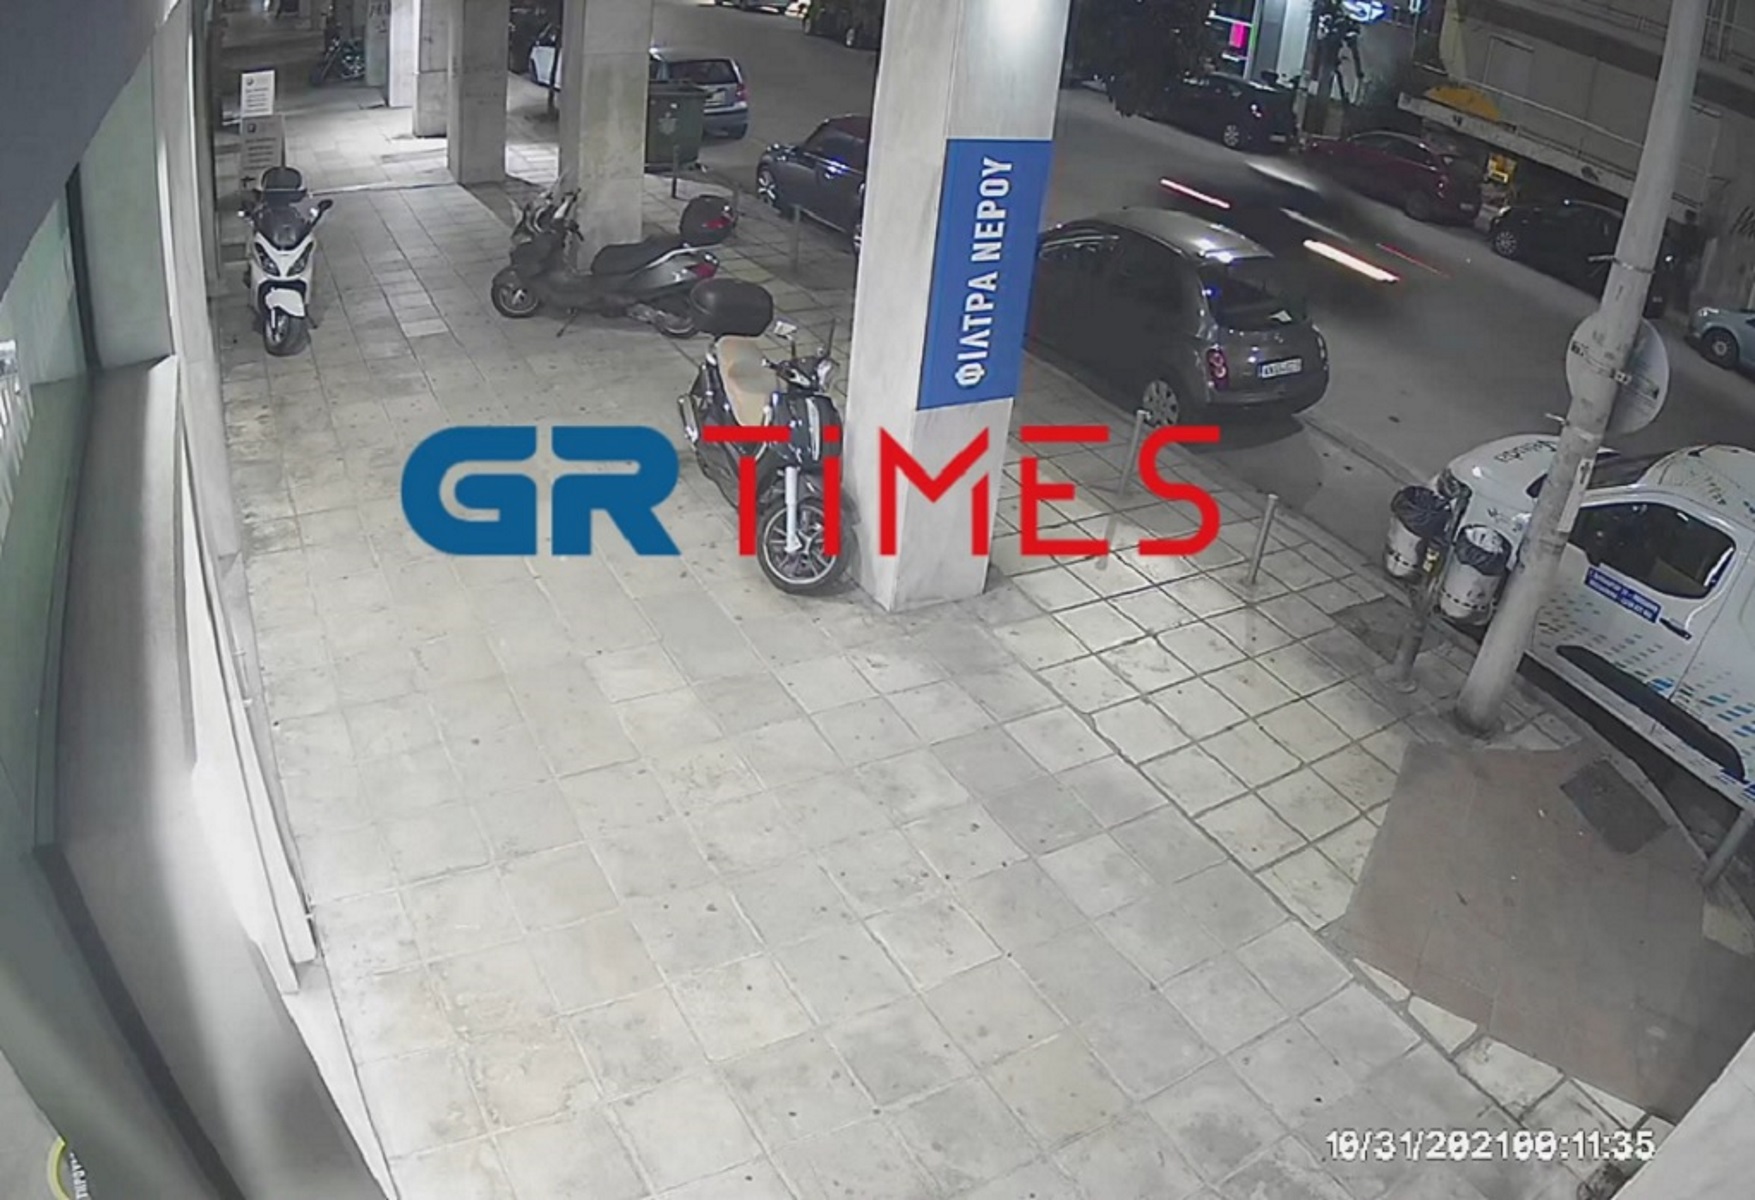 Θεσσαλονίκη: Νέο βίντεο ντοκουμέντο από το σπορ αυτοκίνητο που παρέσυρε και σκότωσε τον διανομέα